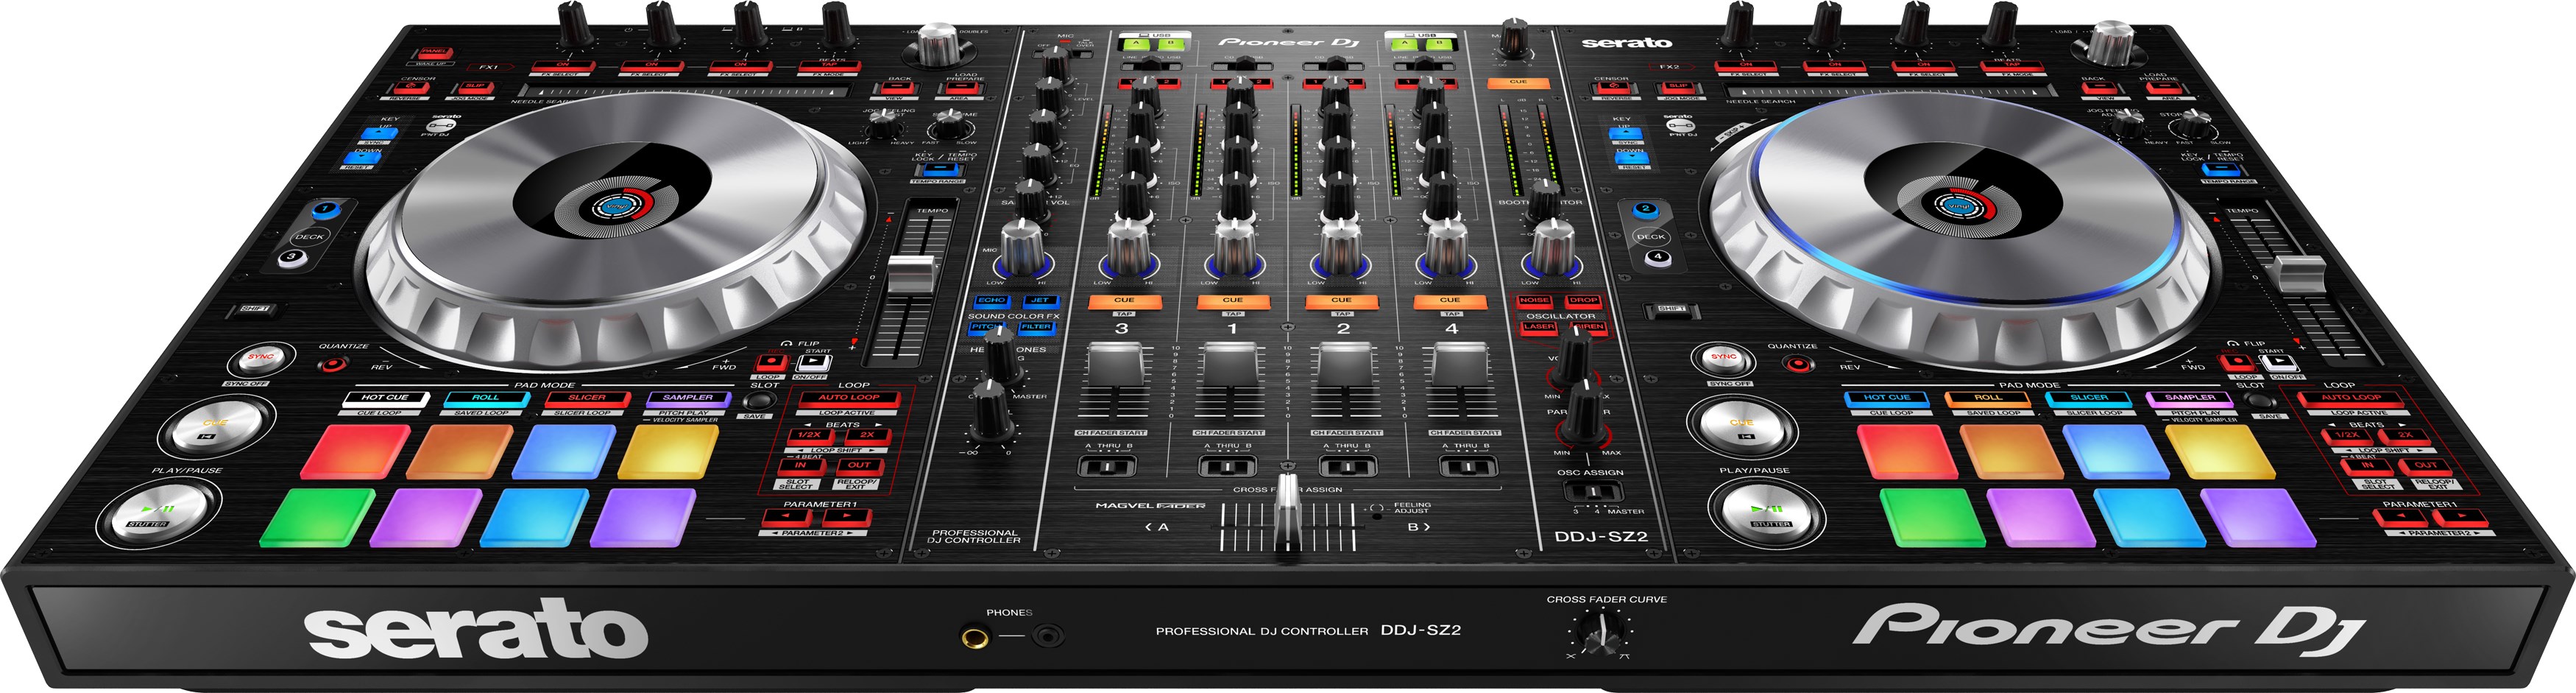 Pioneer Dj Ddj-sz2 - USB DJ-Controller - Variation 2